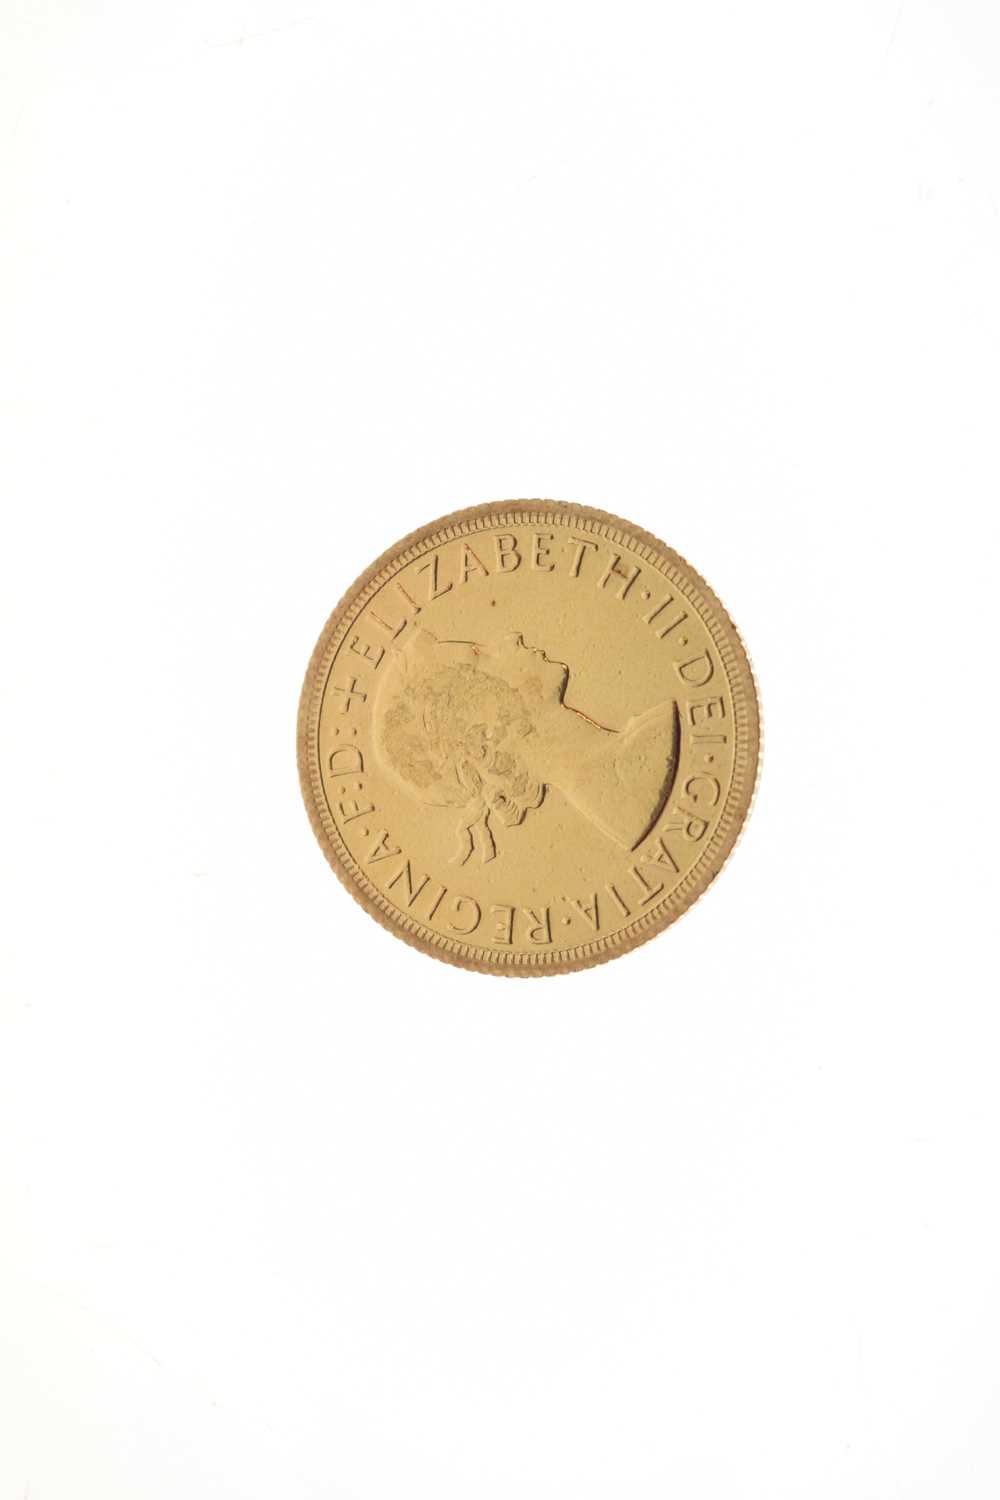 Elizabeth II gold sovereign, 1966 - Image 2 of 3